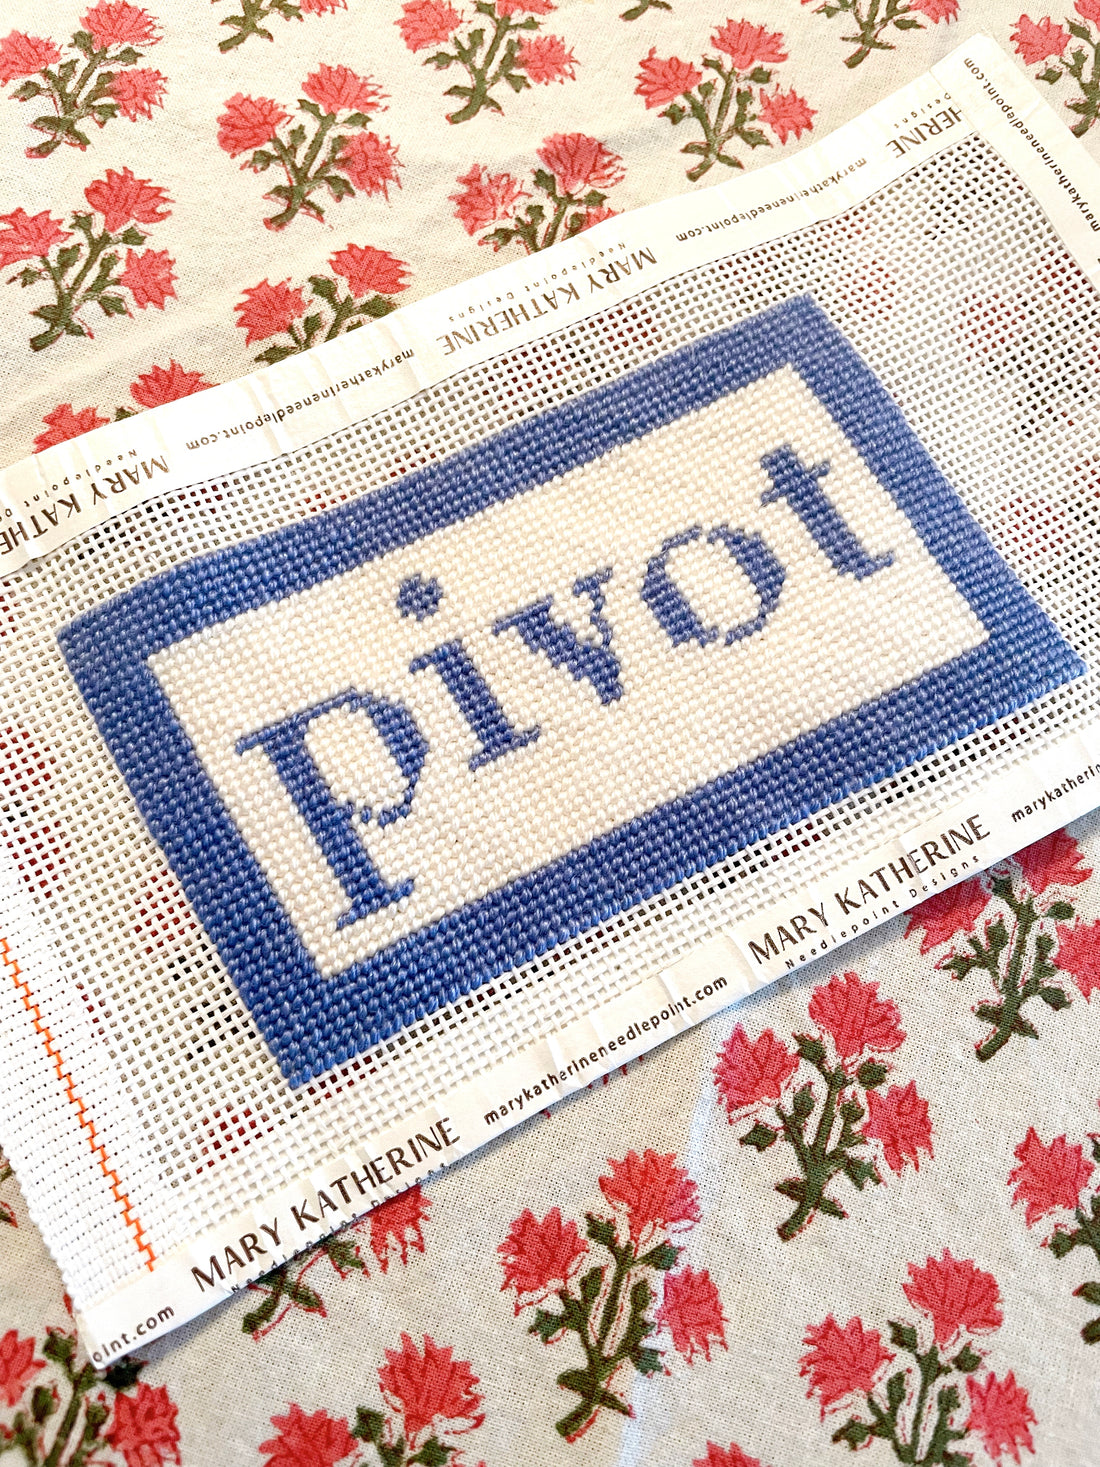 pivot, a verb